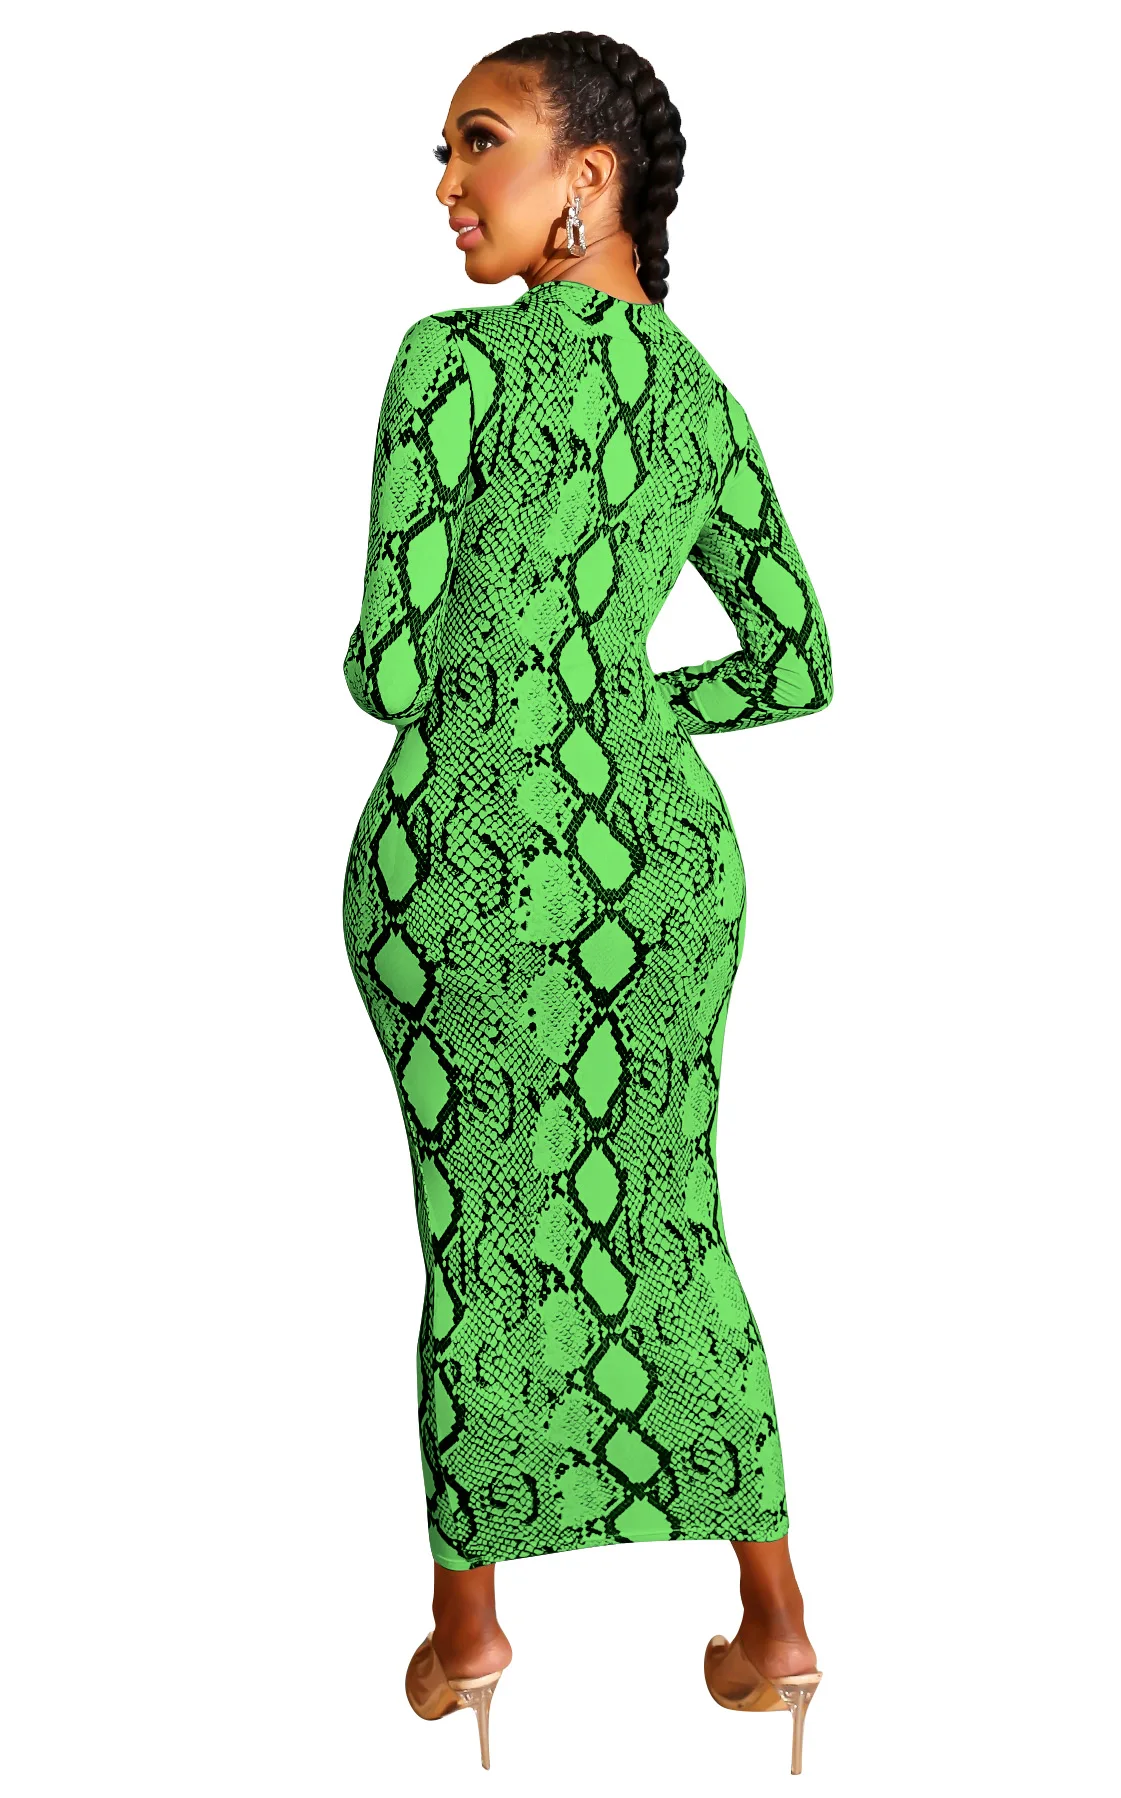 Женское платье из змеиной кожи, сексуальное, с принтом, для женщин, змеиная кожа, облегающее, с длинным рукавом, на молнии, глубокий v-образный вырез, миди, облегающее, элегантное, для вечеринок